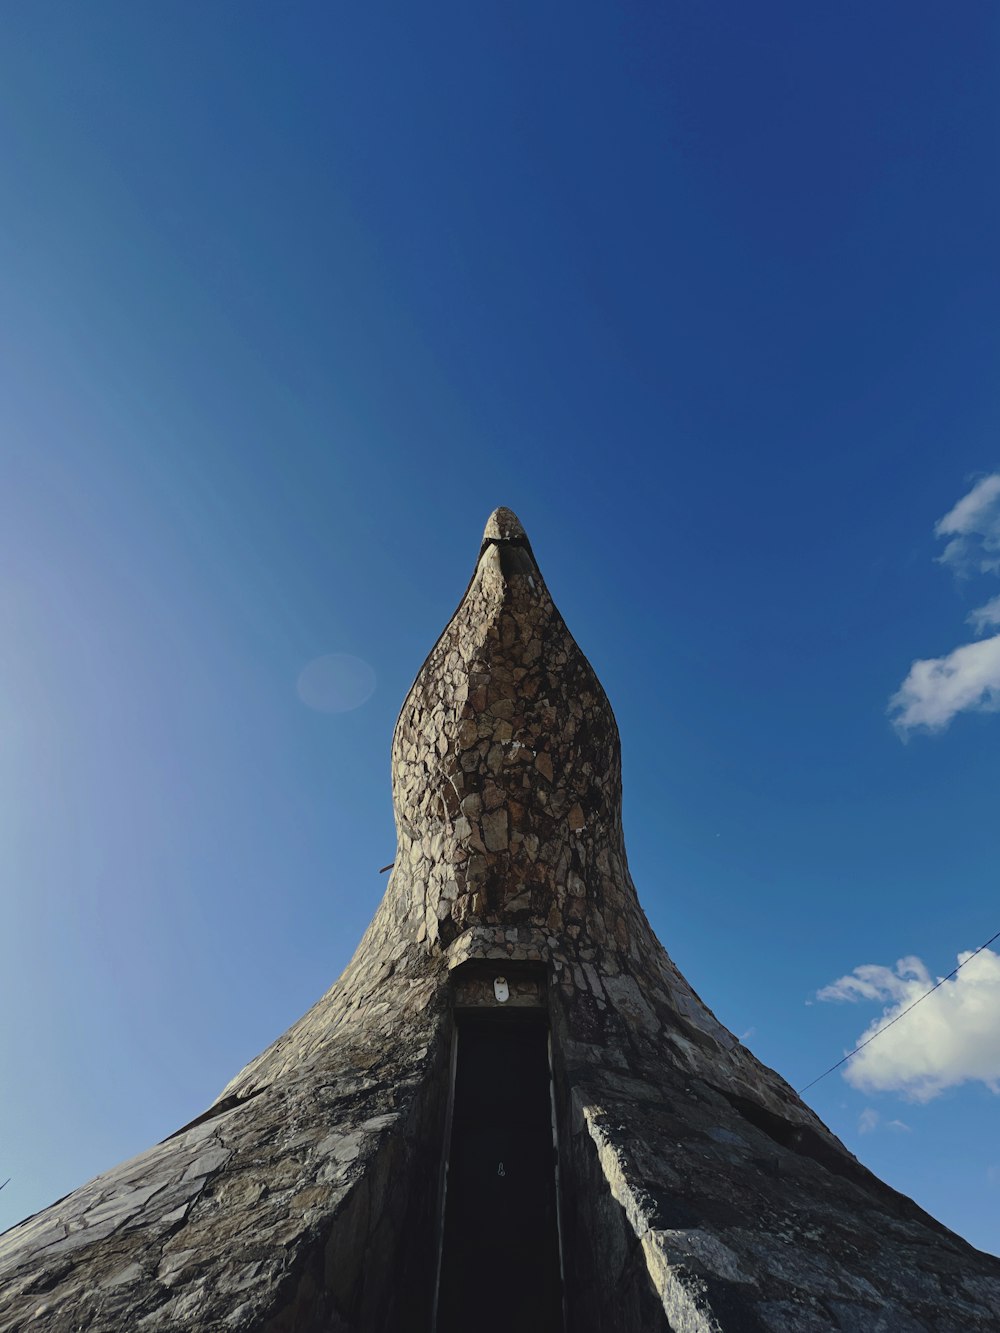 a tall pyramid with a blue sky